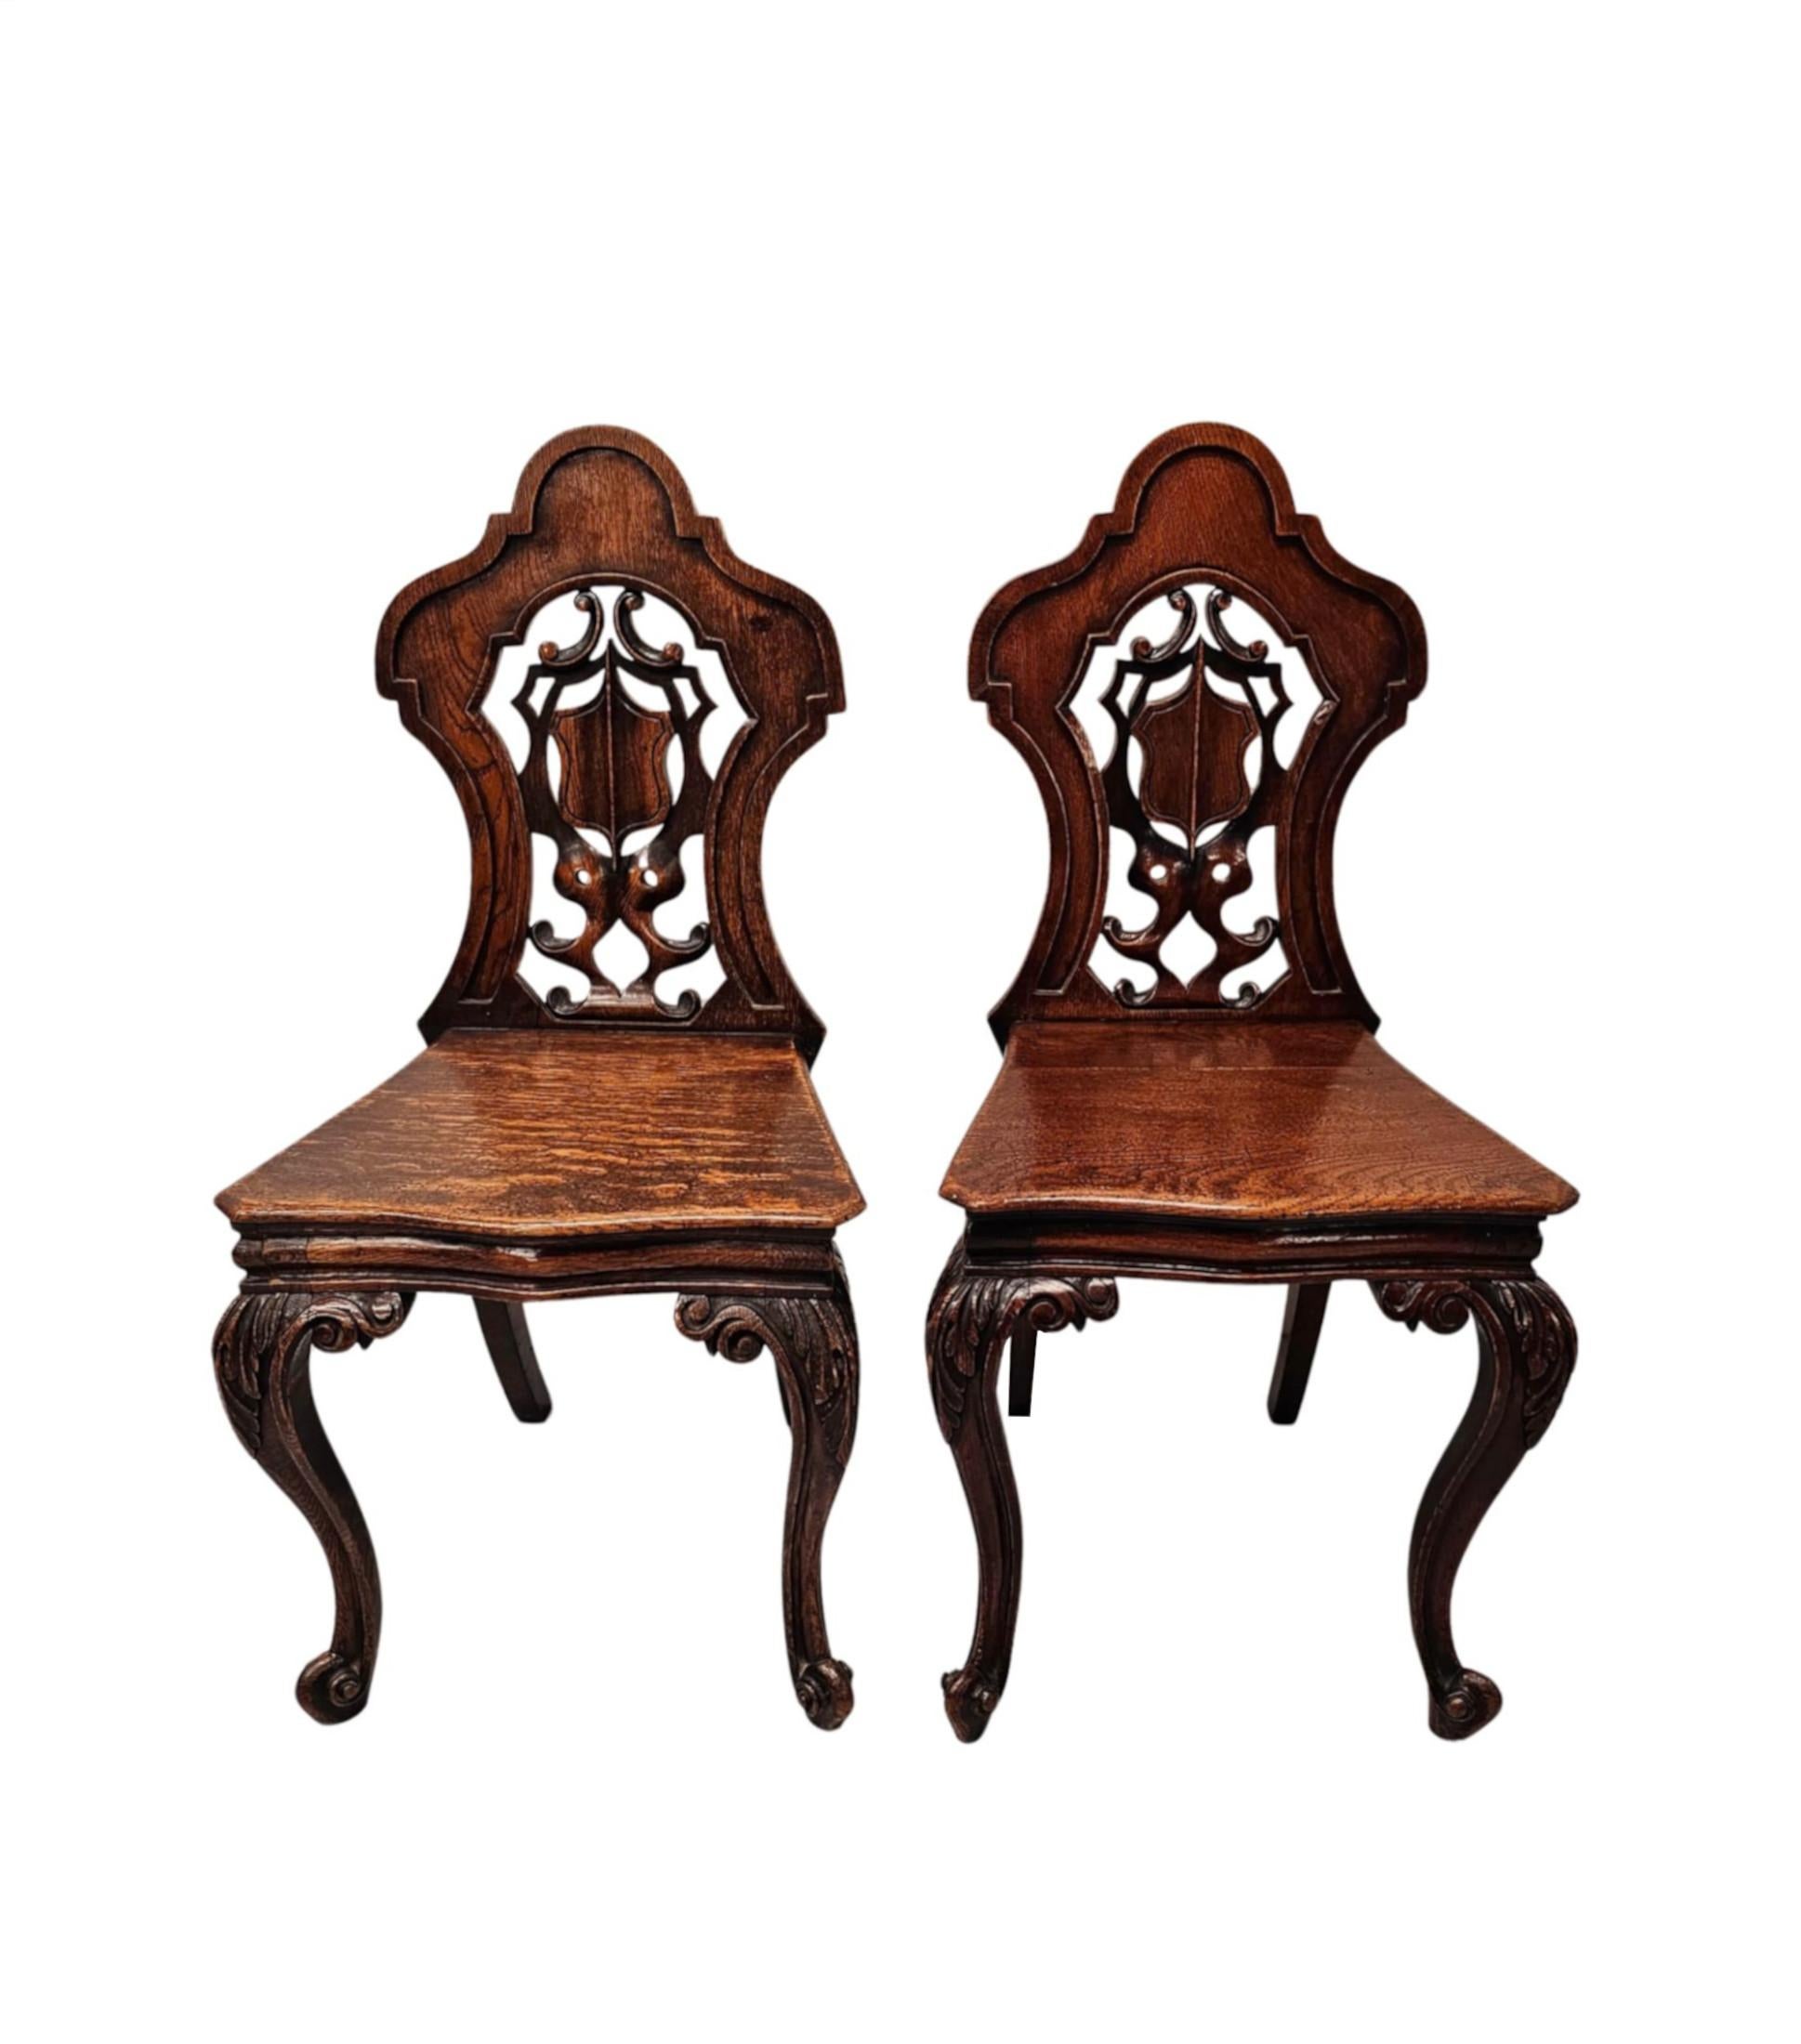 Ein fabelhaftes Paar von 19. Jahrhundert Eiche Halle Stühle von hervorragender Qualität und fein von Hand geschnitzt mit herrlich reich Patina und Maserung.  Der gut geformte, getäfelte und durchbrochene Schildrücken mit schönen Motivdetails,